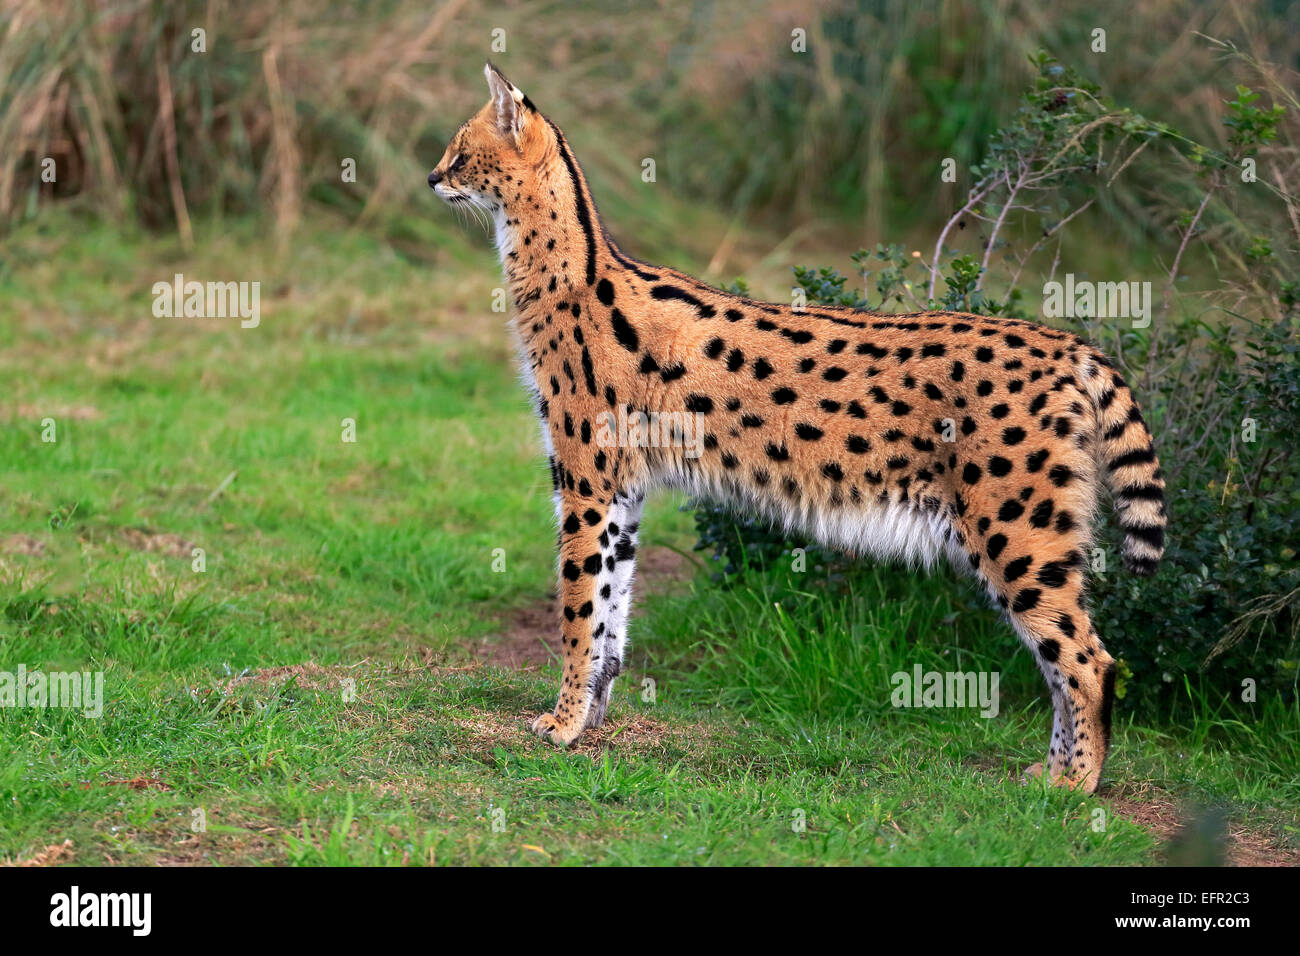 adult serval